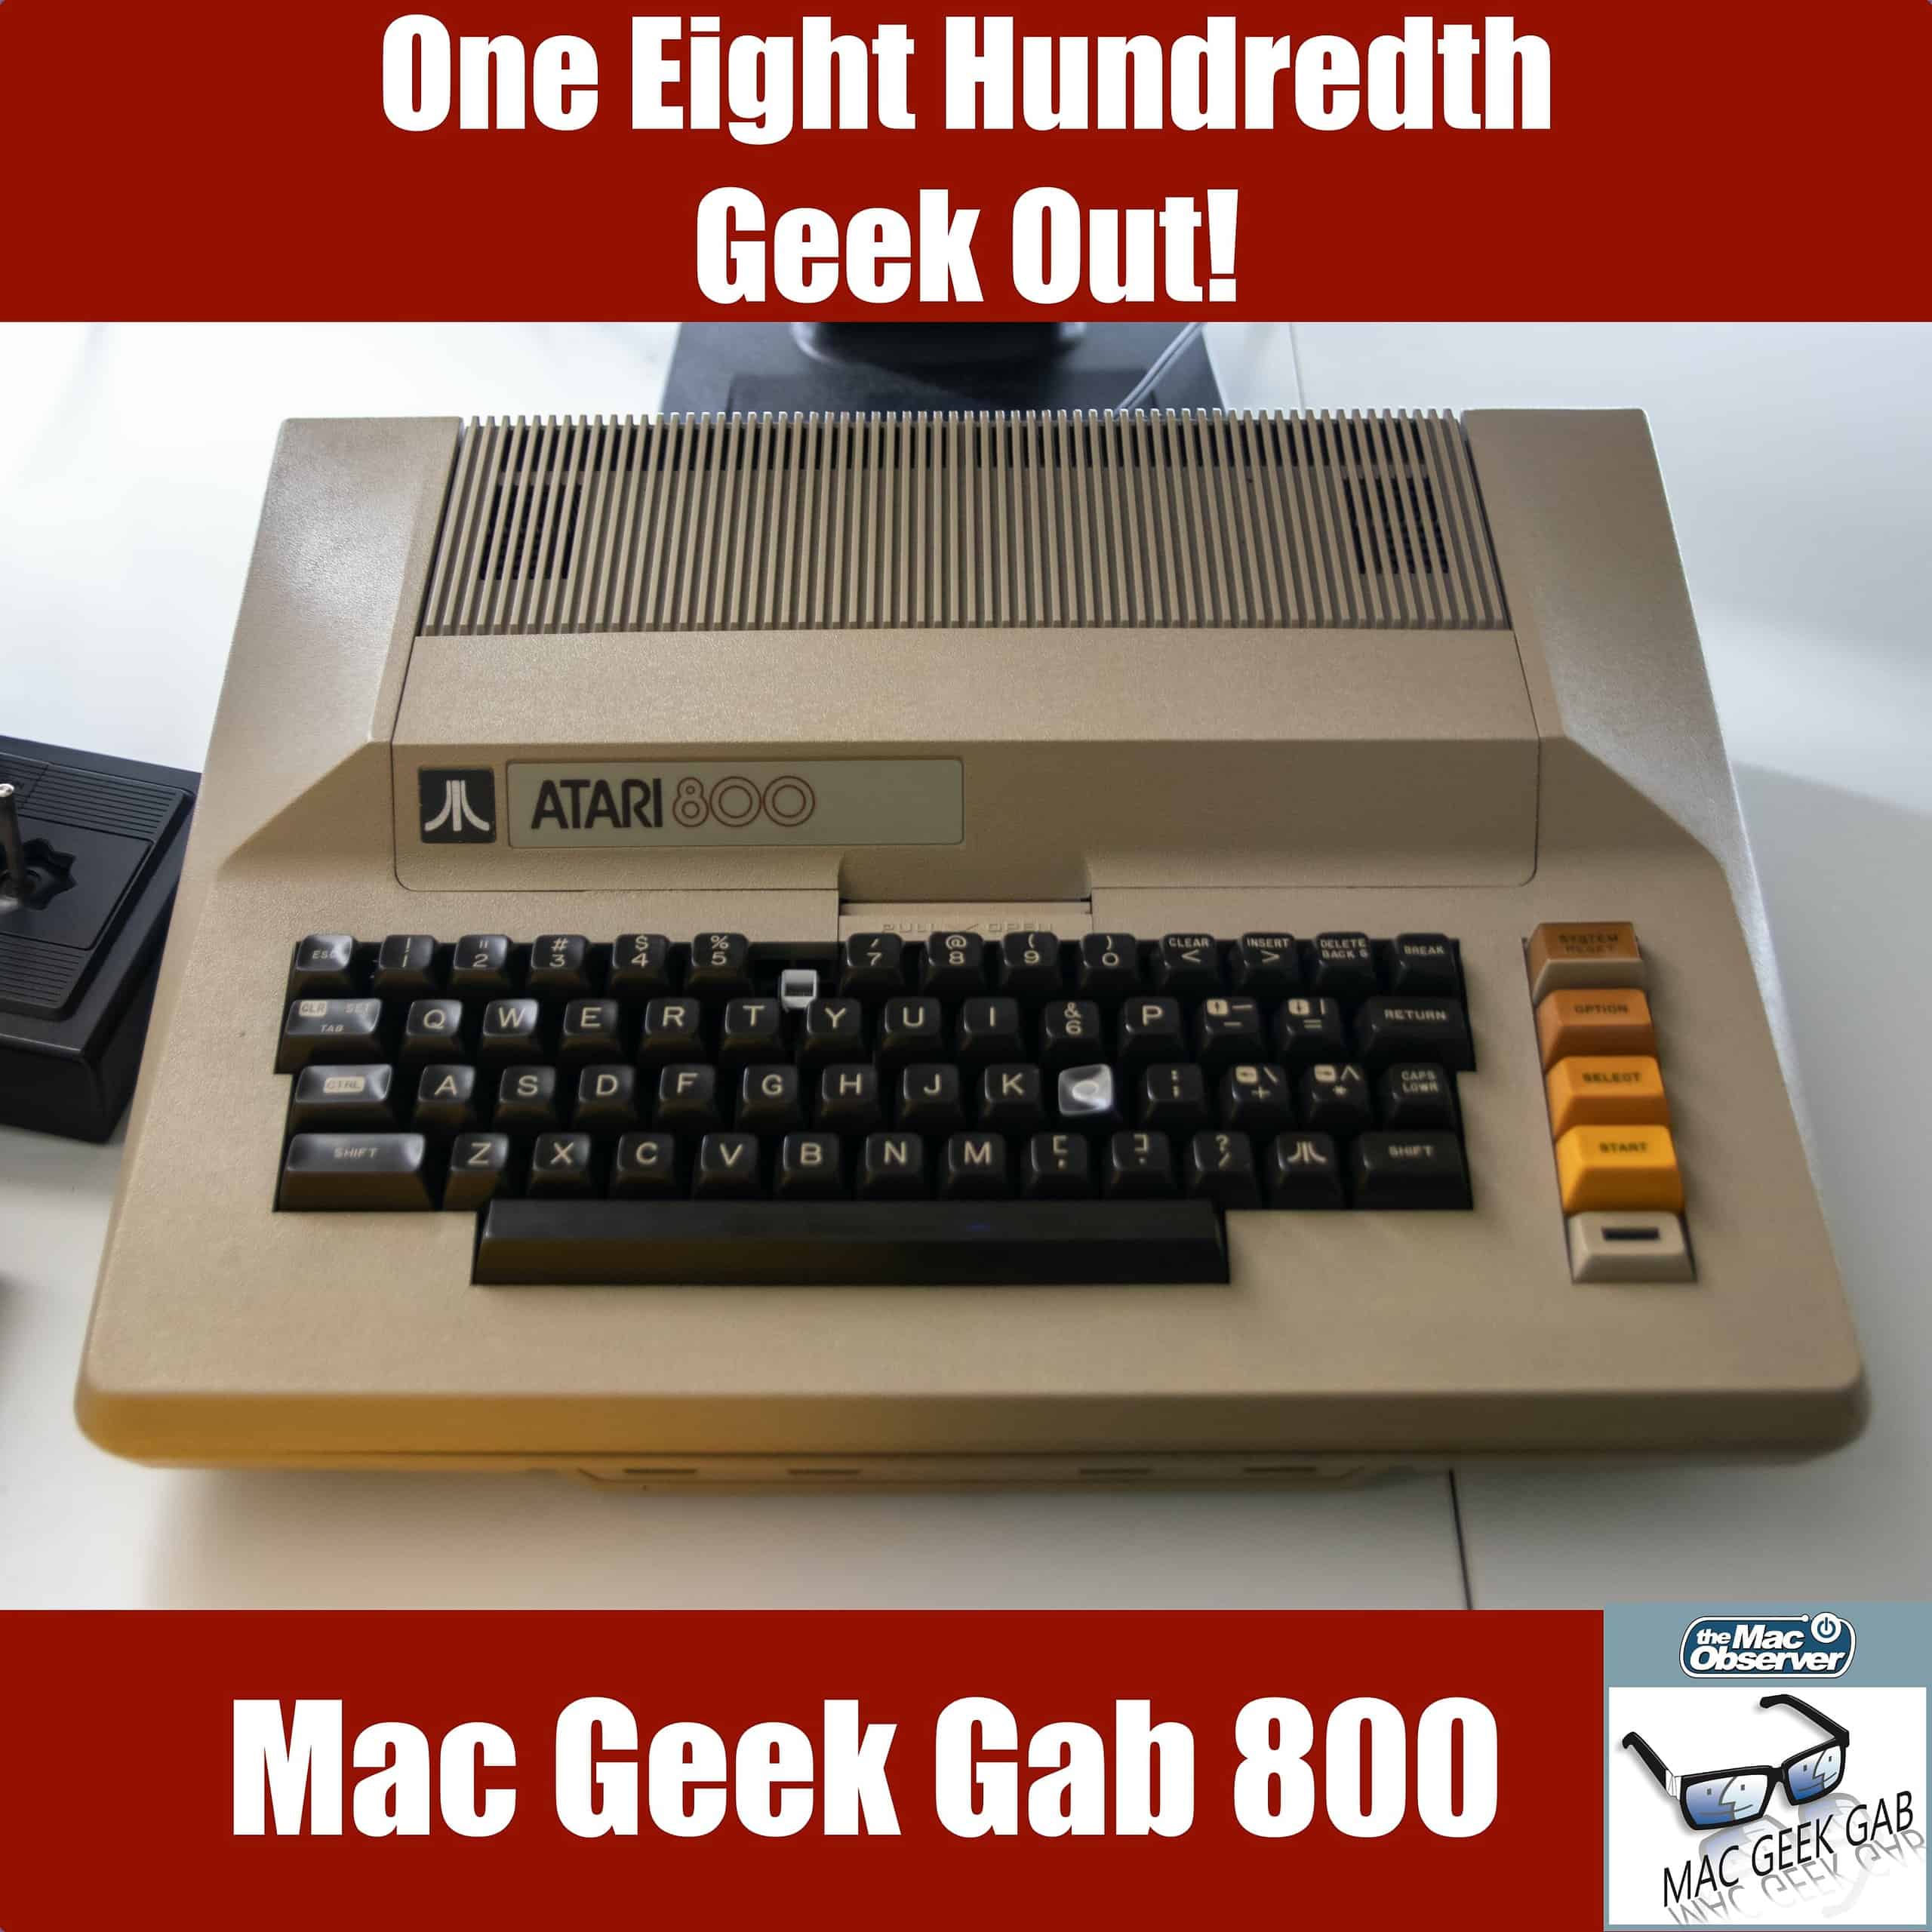 One Eight Hundredth Geek Out! – Mac Geek Gab 800